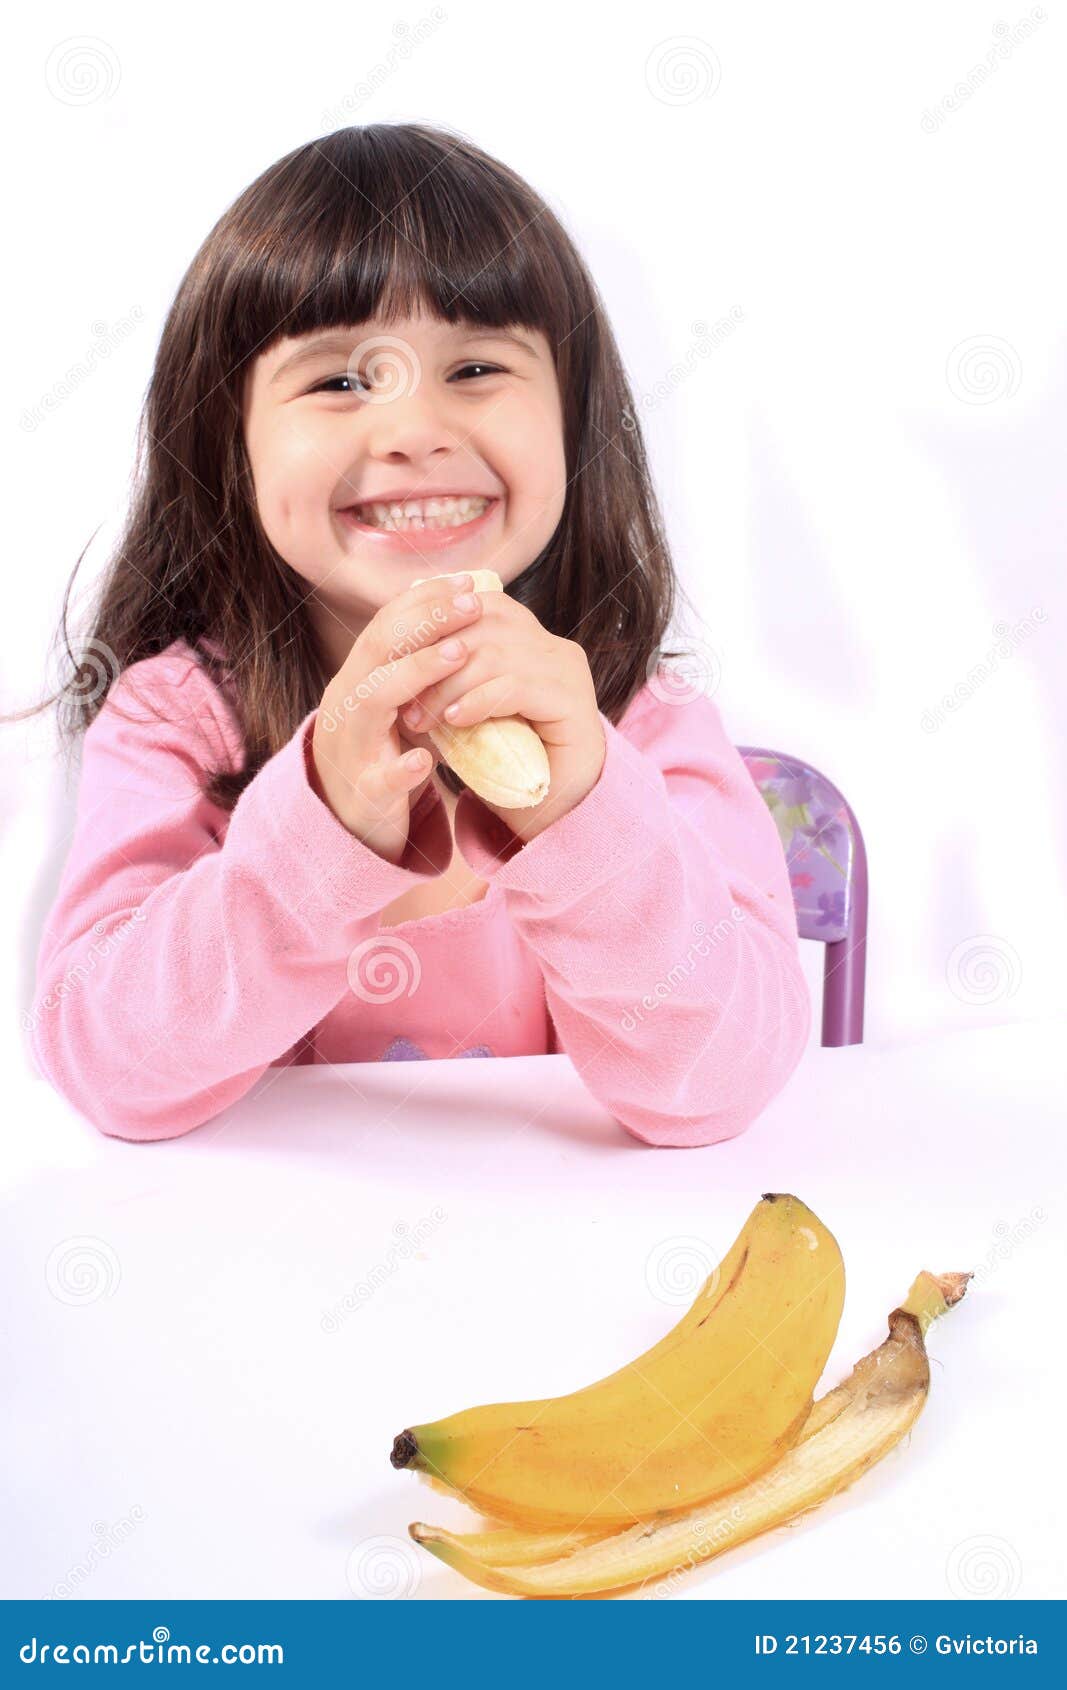 吃香蕉的亚裔女孩 库存图片. 图片 包括有 女孩, 结构树, 食物, 绿叶, 衣物, 传统, 敬慕, 饥饿 - 2406081